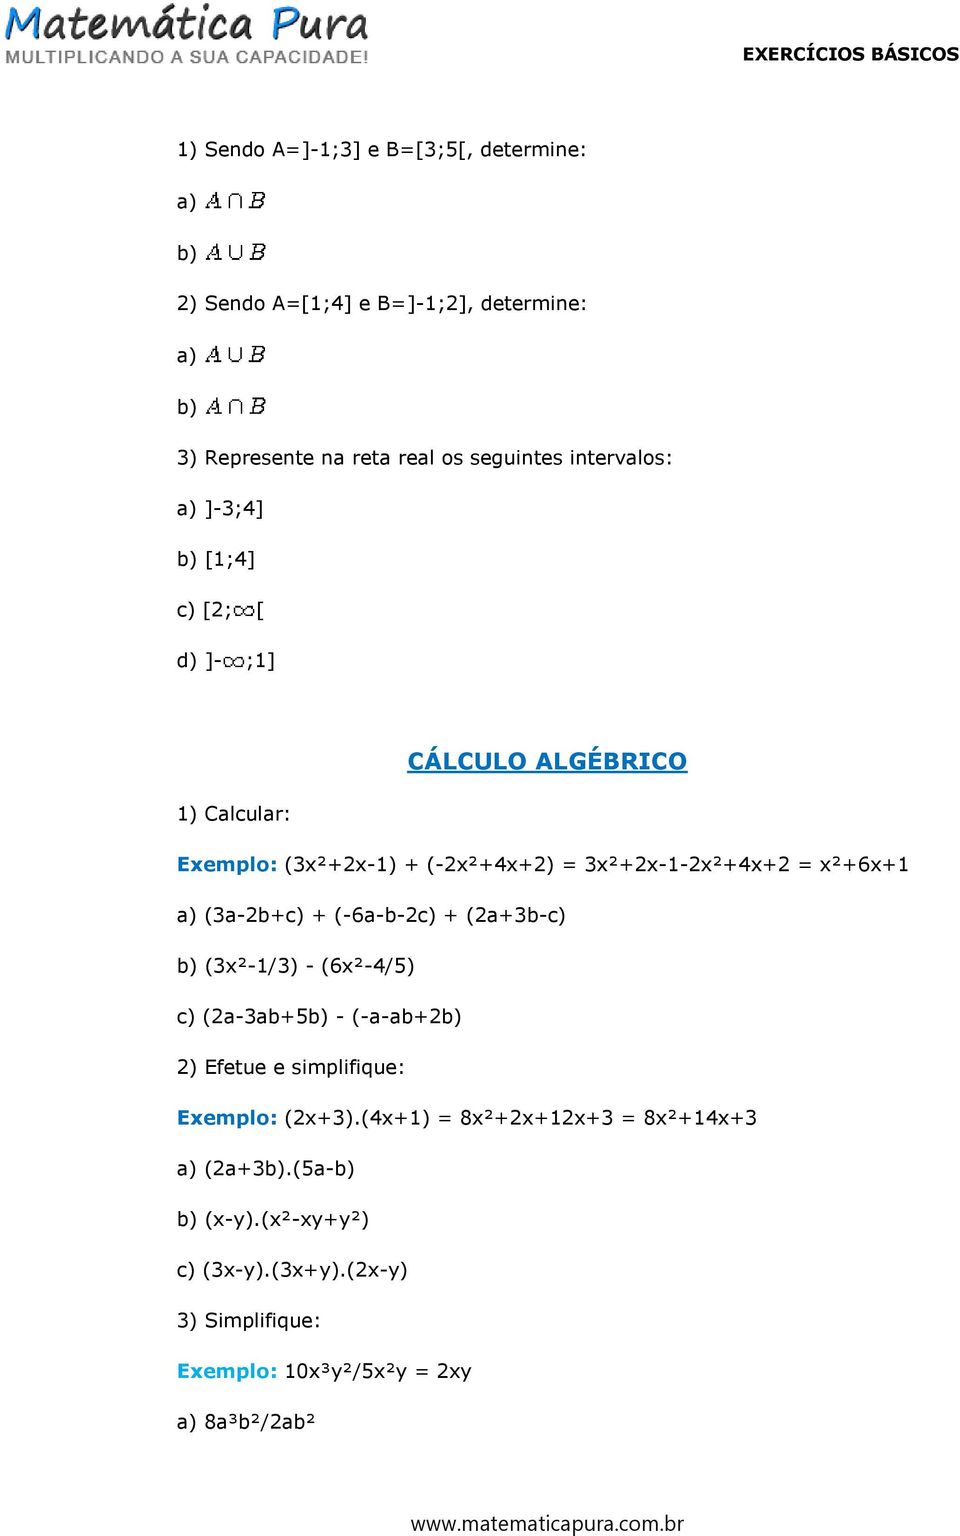 = x²+6x+1 (3a-2b+c) + (-6a-b-2c) + (2a+3b-c) (3x²-1/3) - (6x²-4/5) c) (2a-3ab+5 - (-a-ab+2 2) Efetue e simplifique: Exemplo: